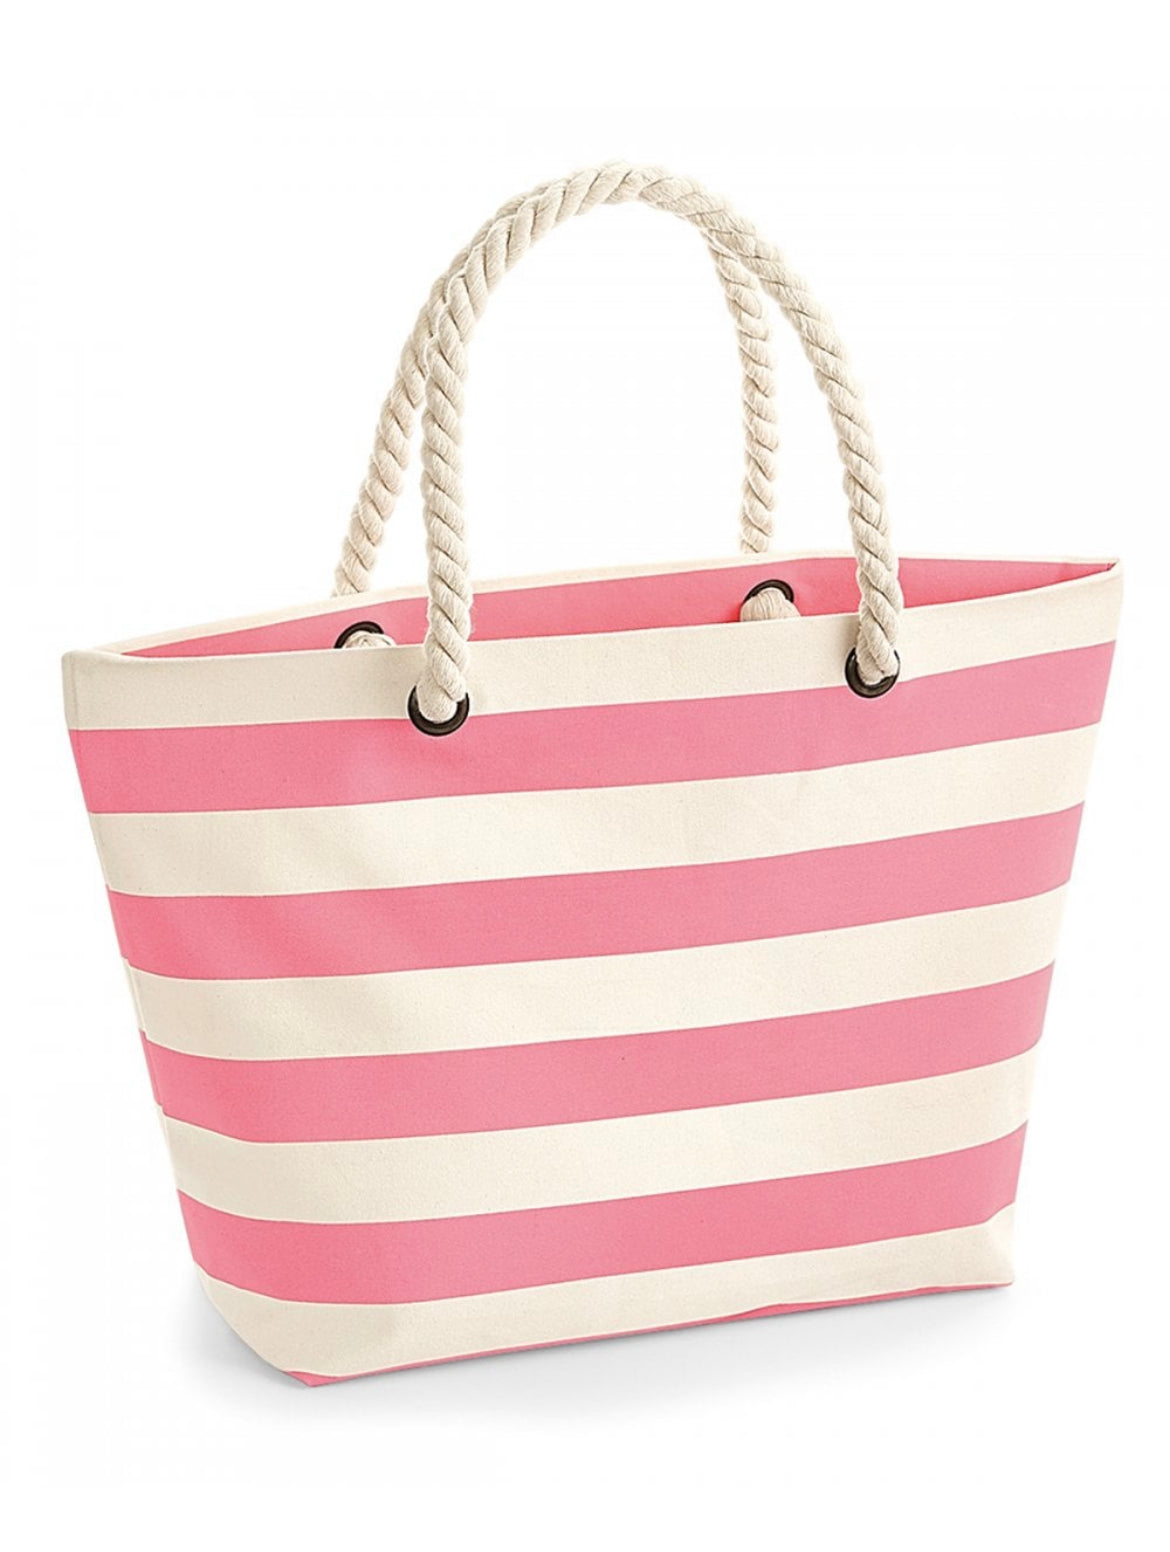 ⭐️ Nautical Beach Bag - 3 Colours